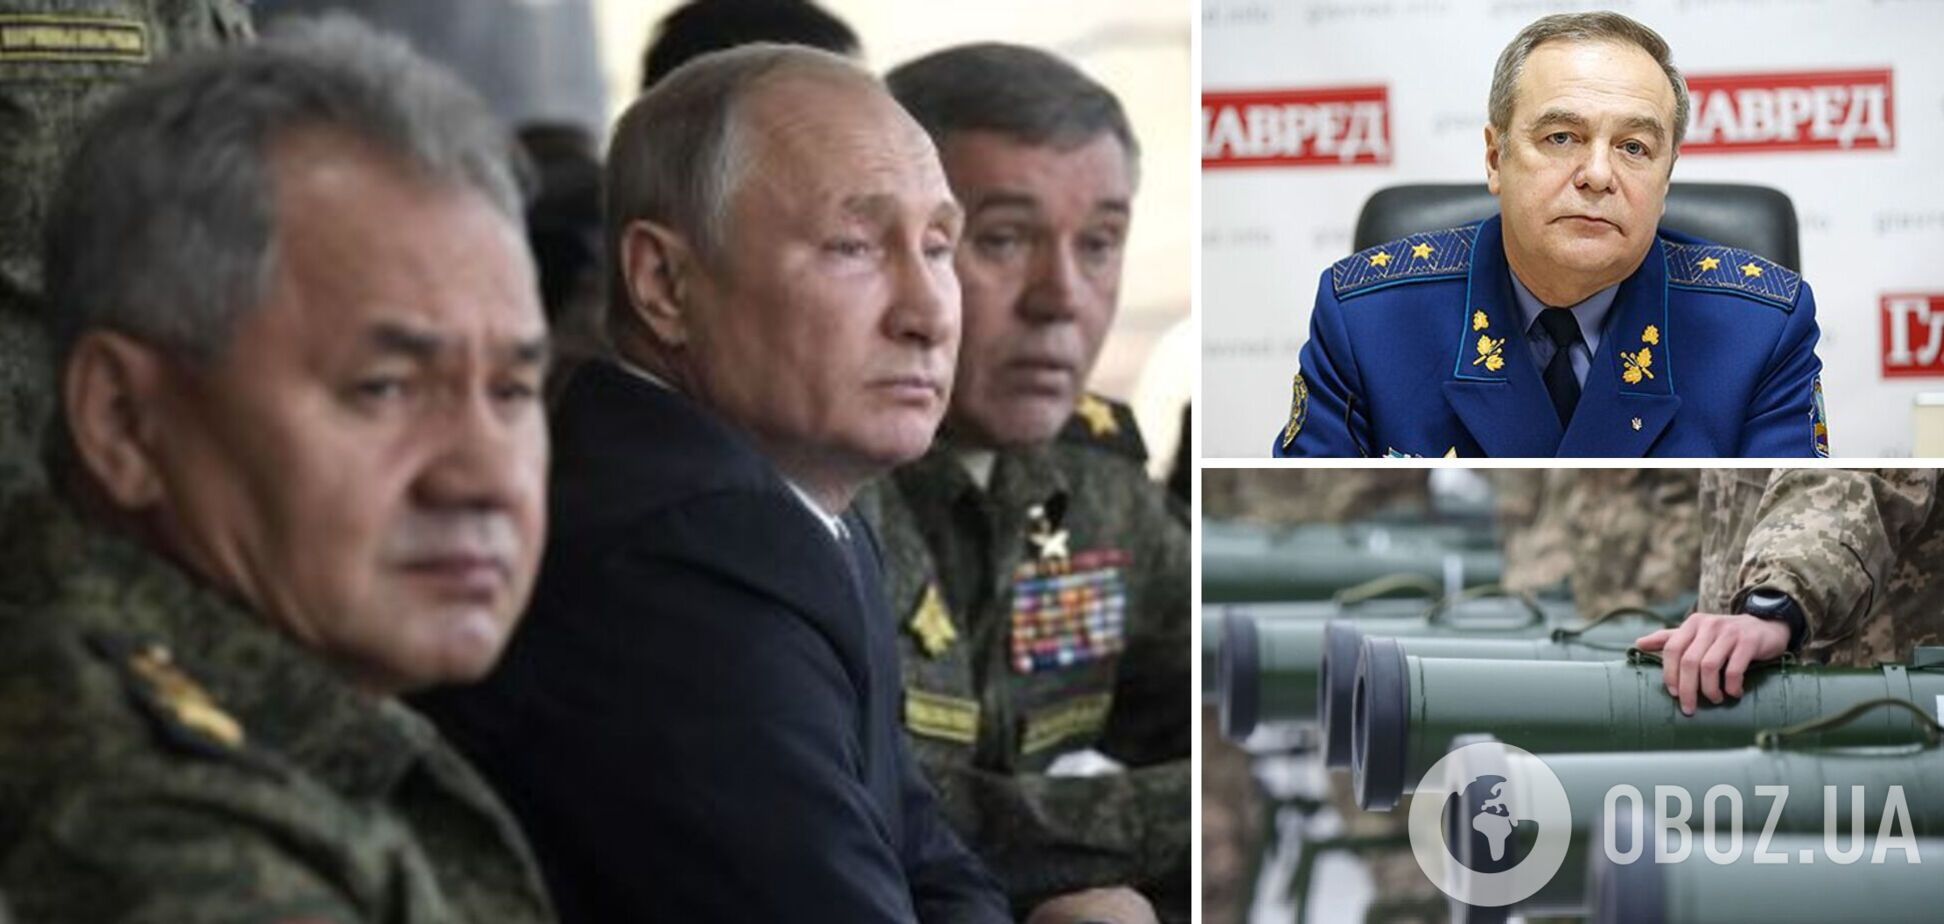 Романенко: новый этап войны начнется через пару недель. Могут ли ВСУ бить по Кремлю? Интервью